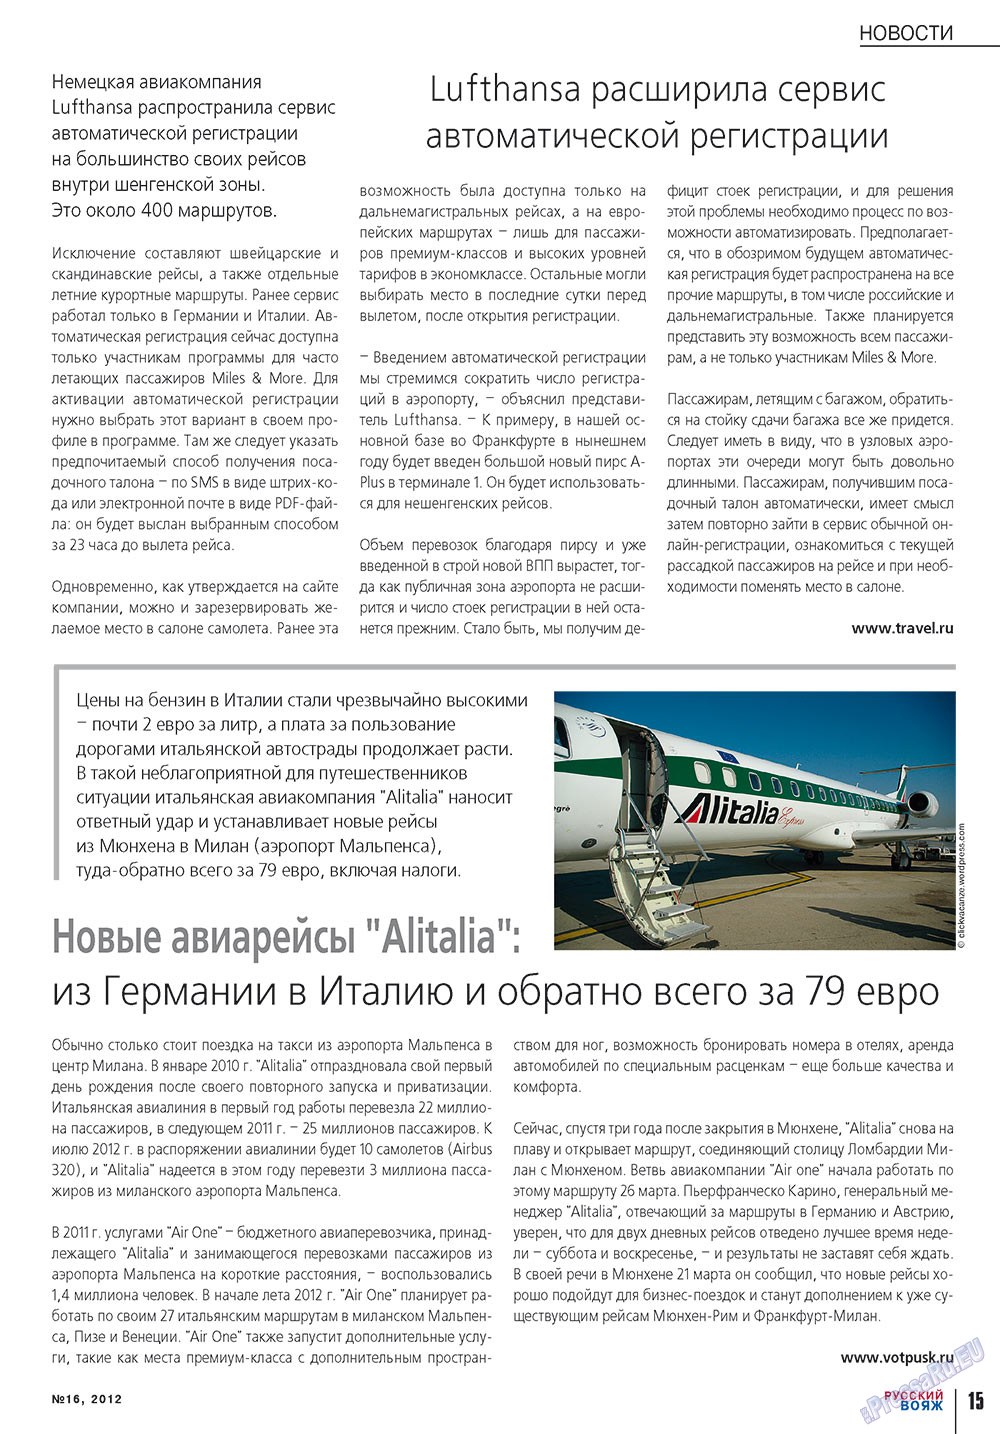 Русский вояж (журнал). 2012 год, номер 16, стр. 15